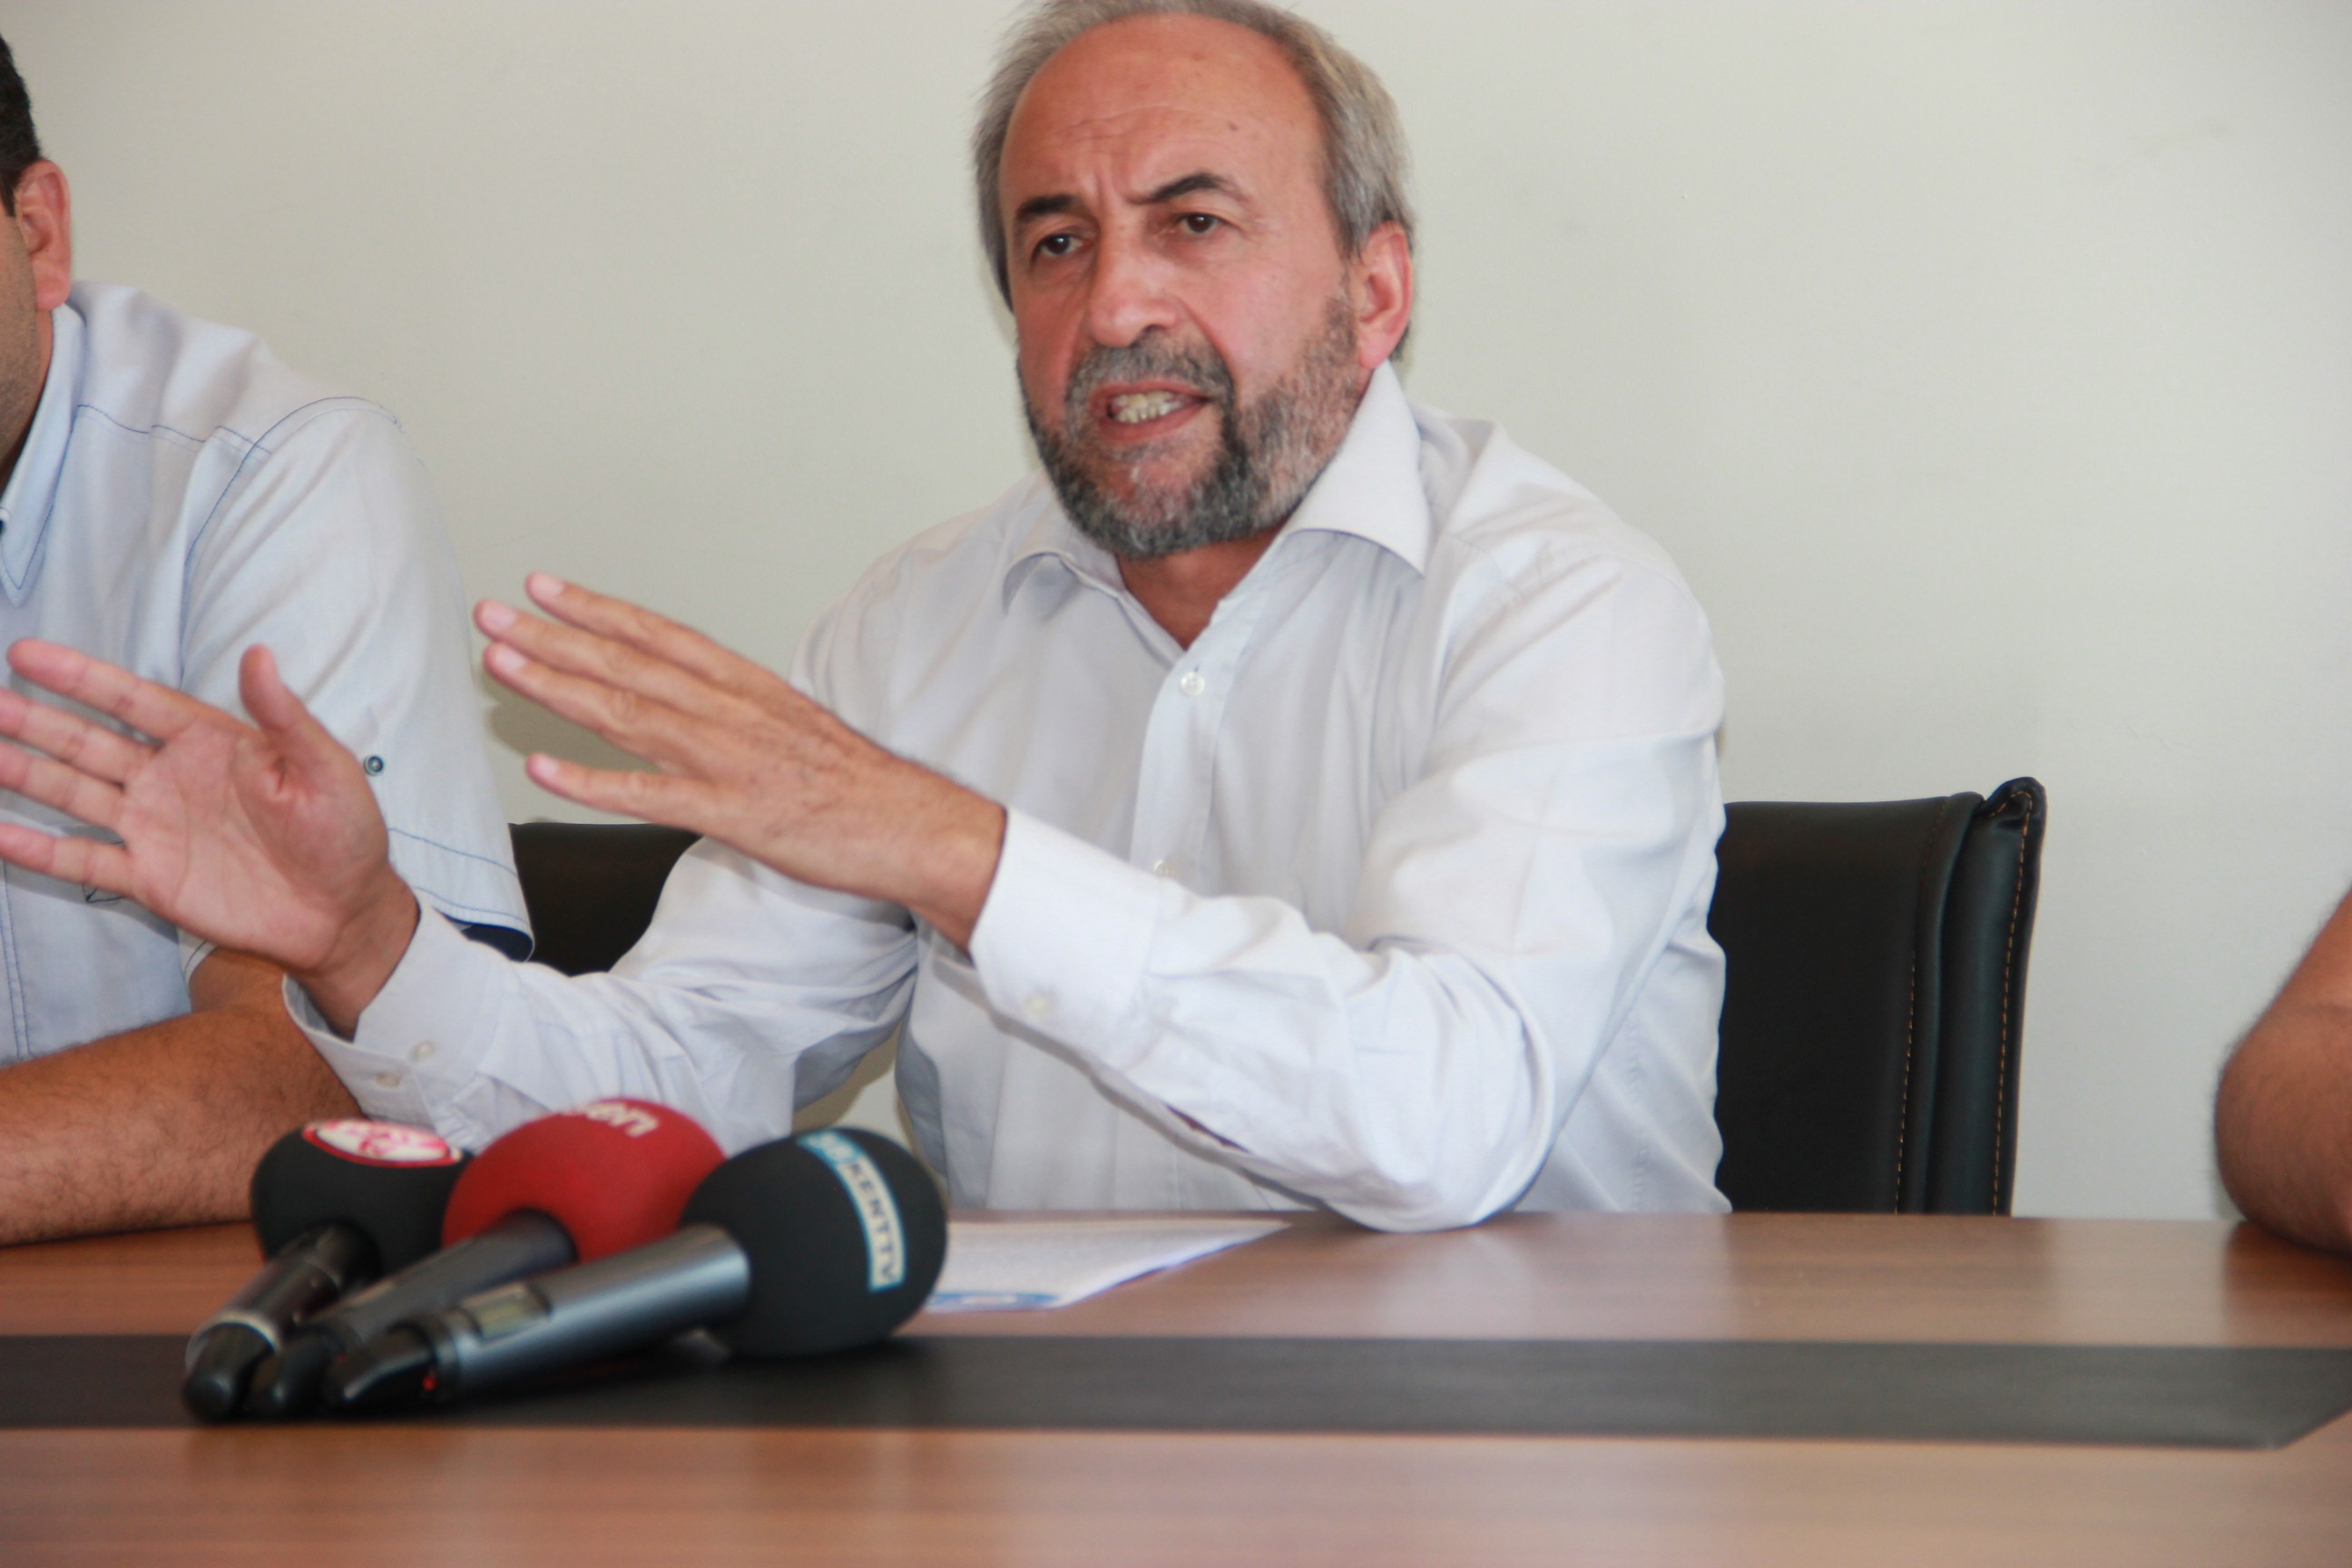 Başkan Aydın Kalkan: “4 yılda bir mülakat okul müdürlerinin motivasyonunu düşürüyor”